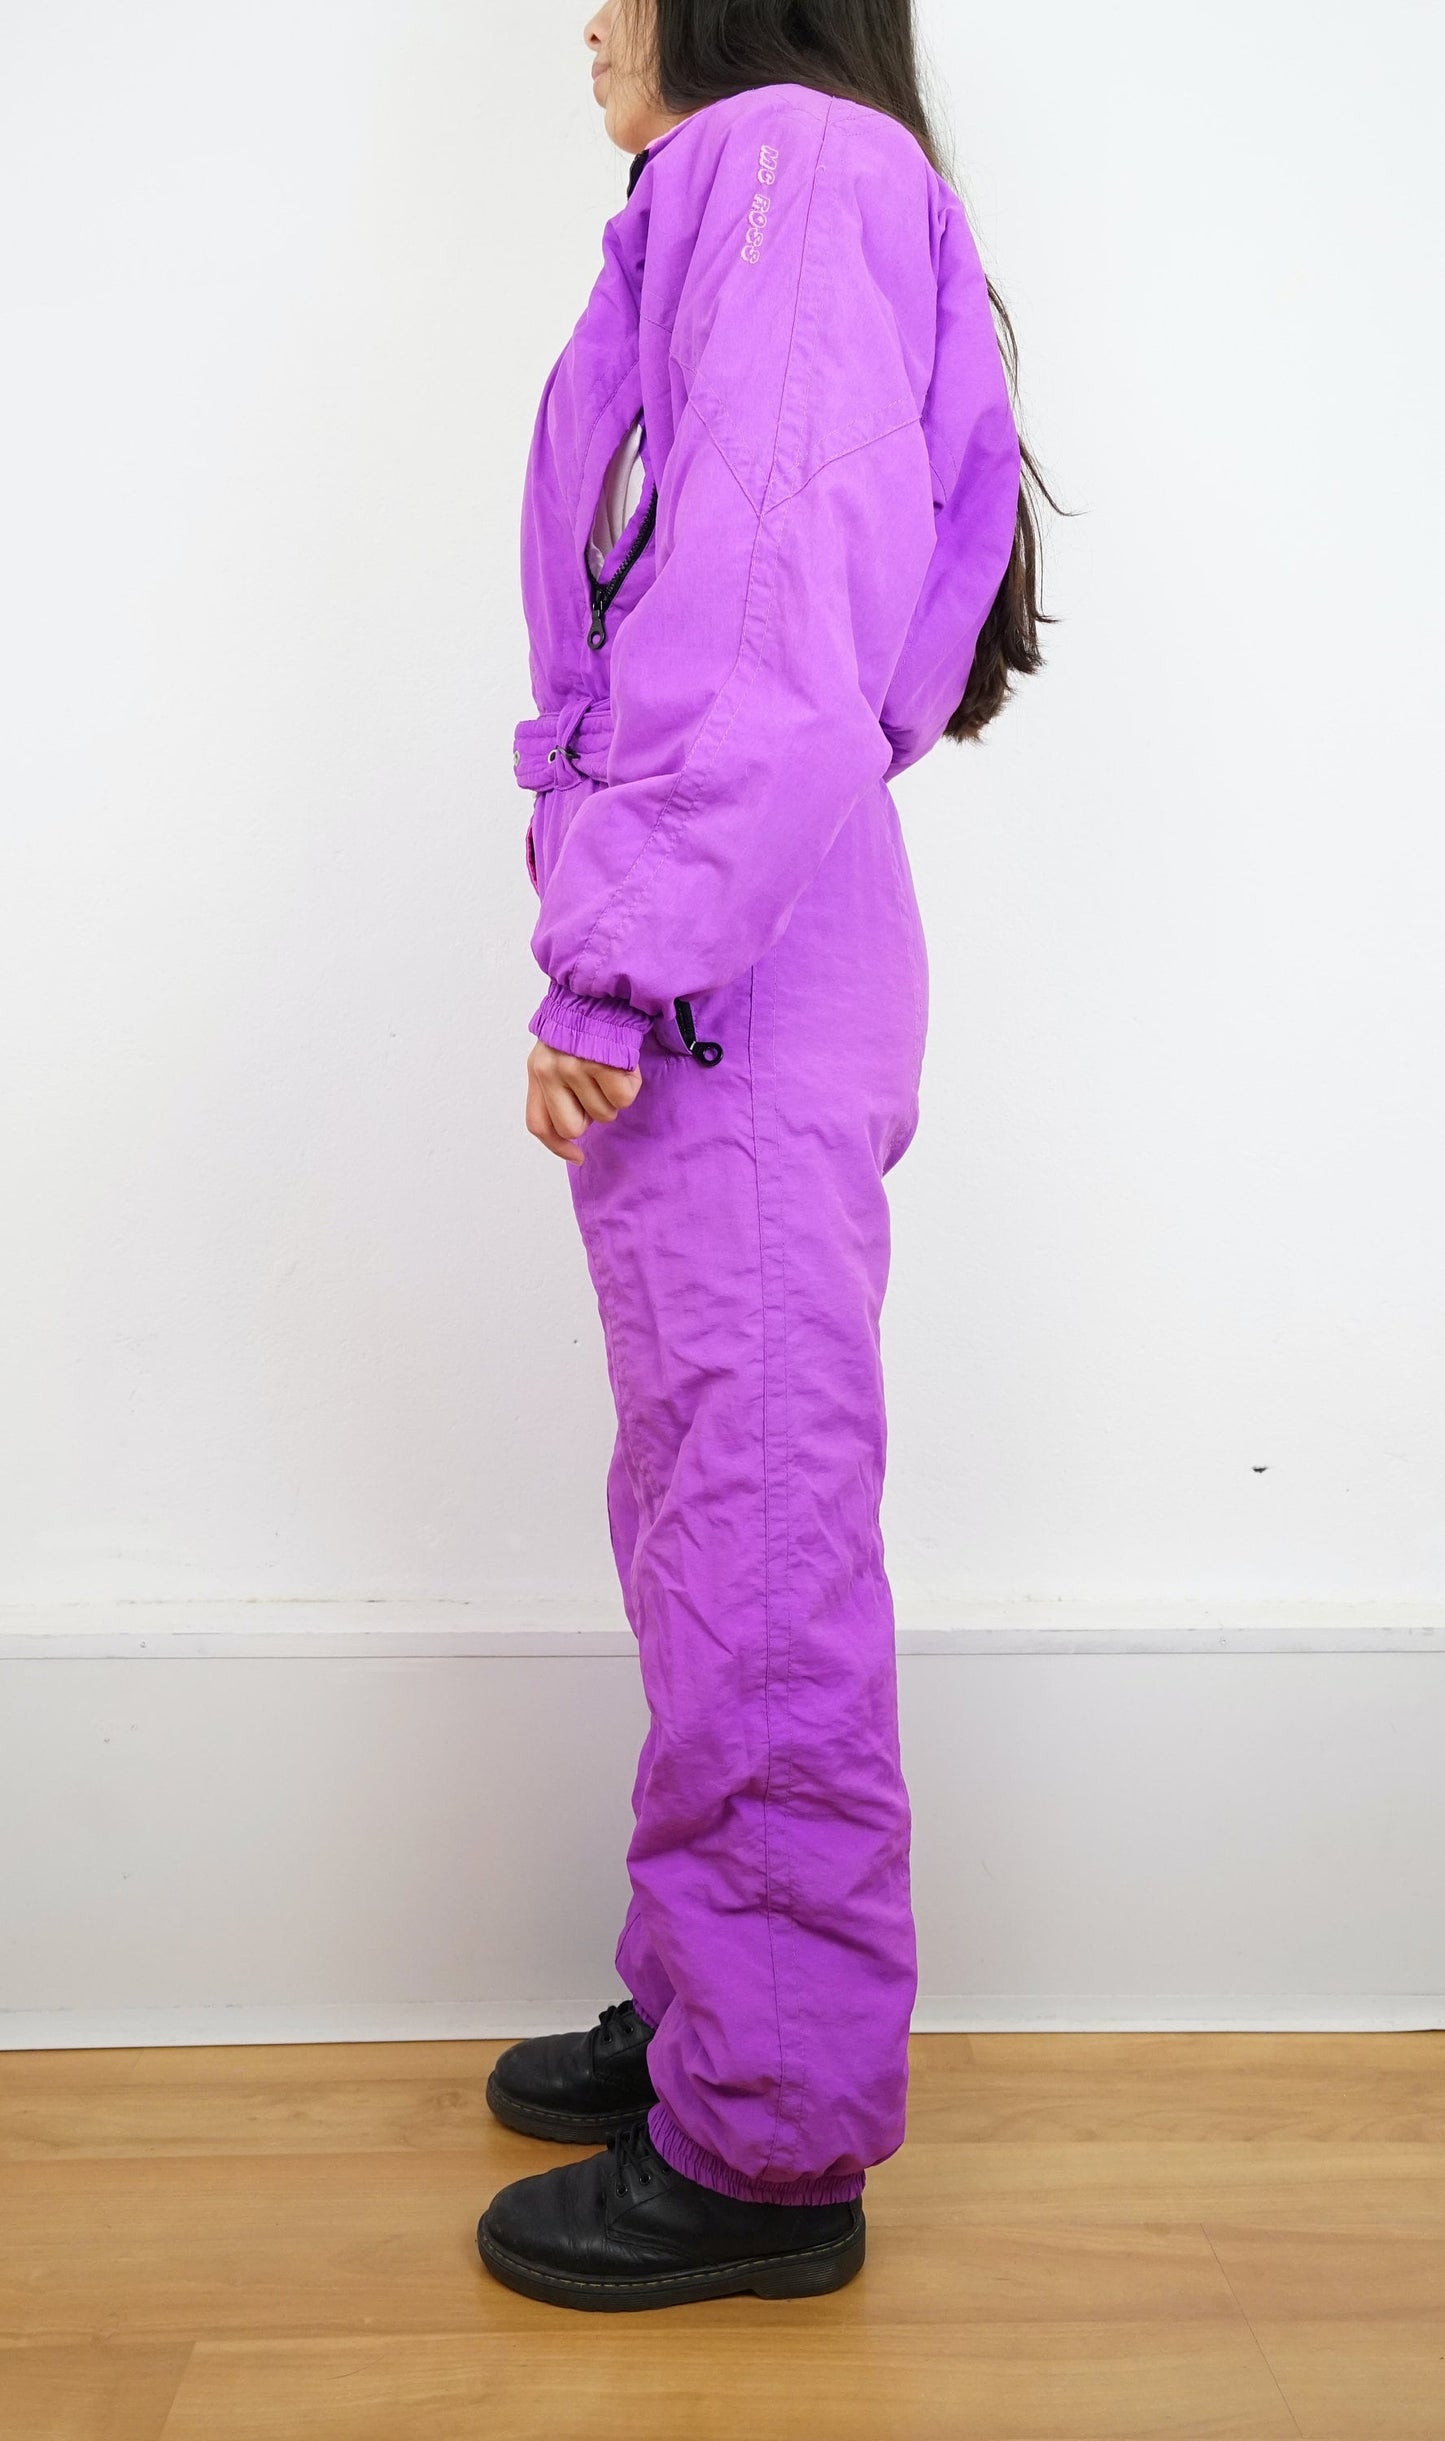 Vintage pink purple Ski Suit size S-M